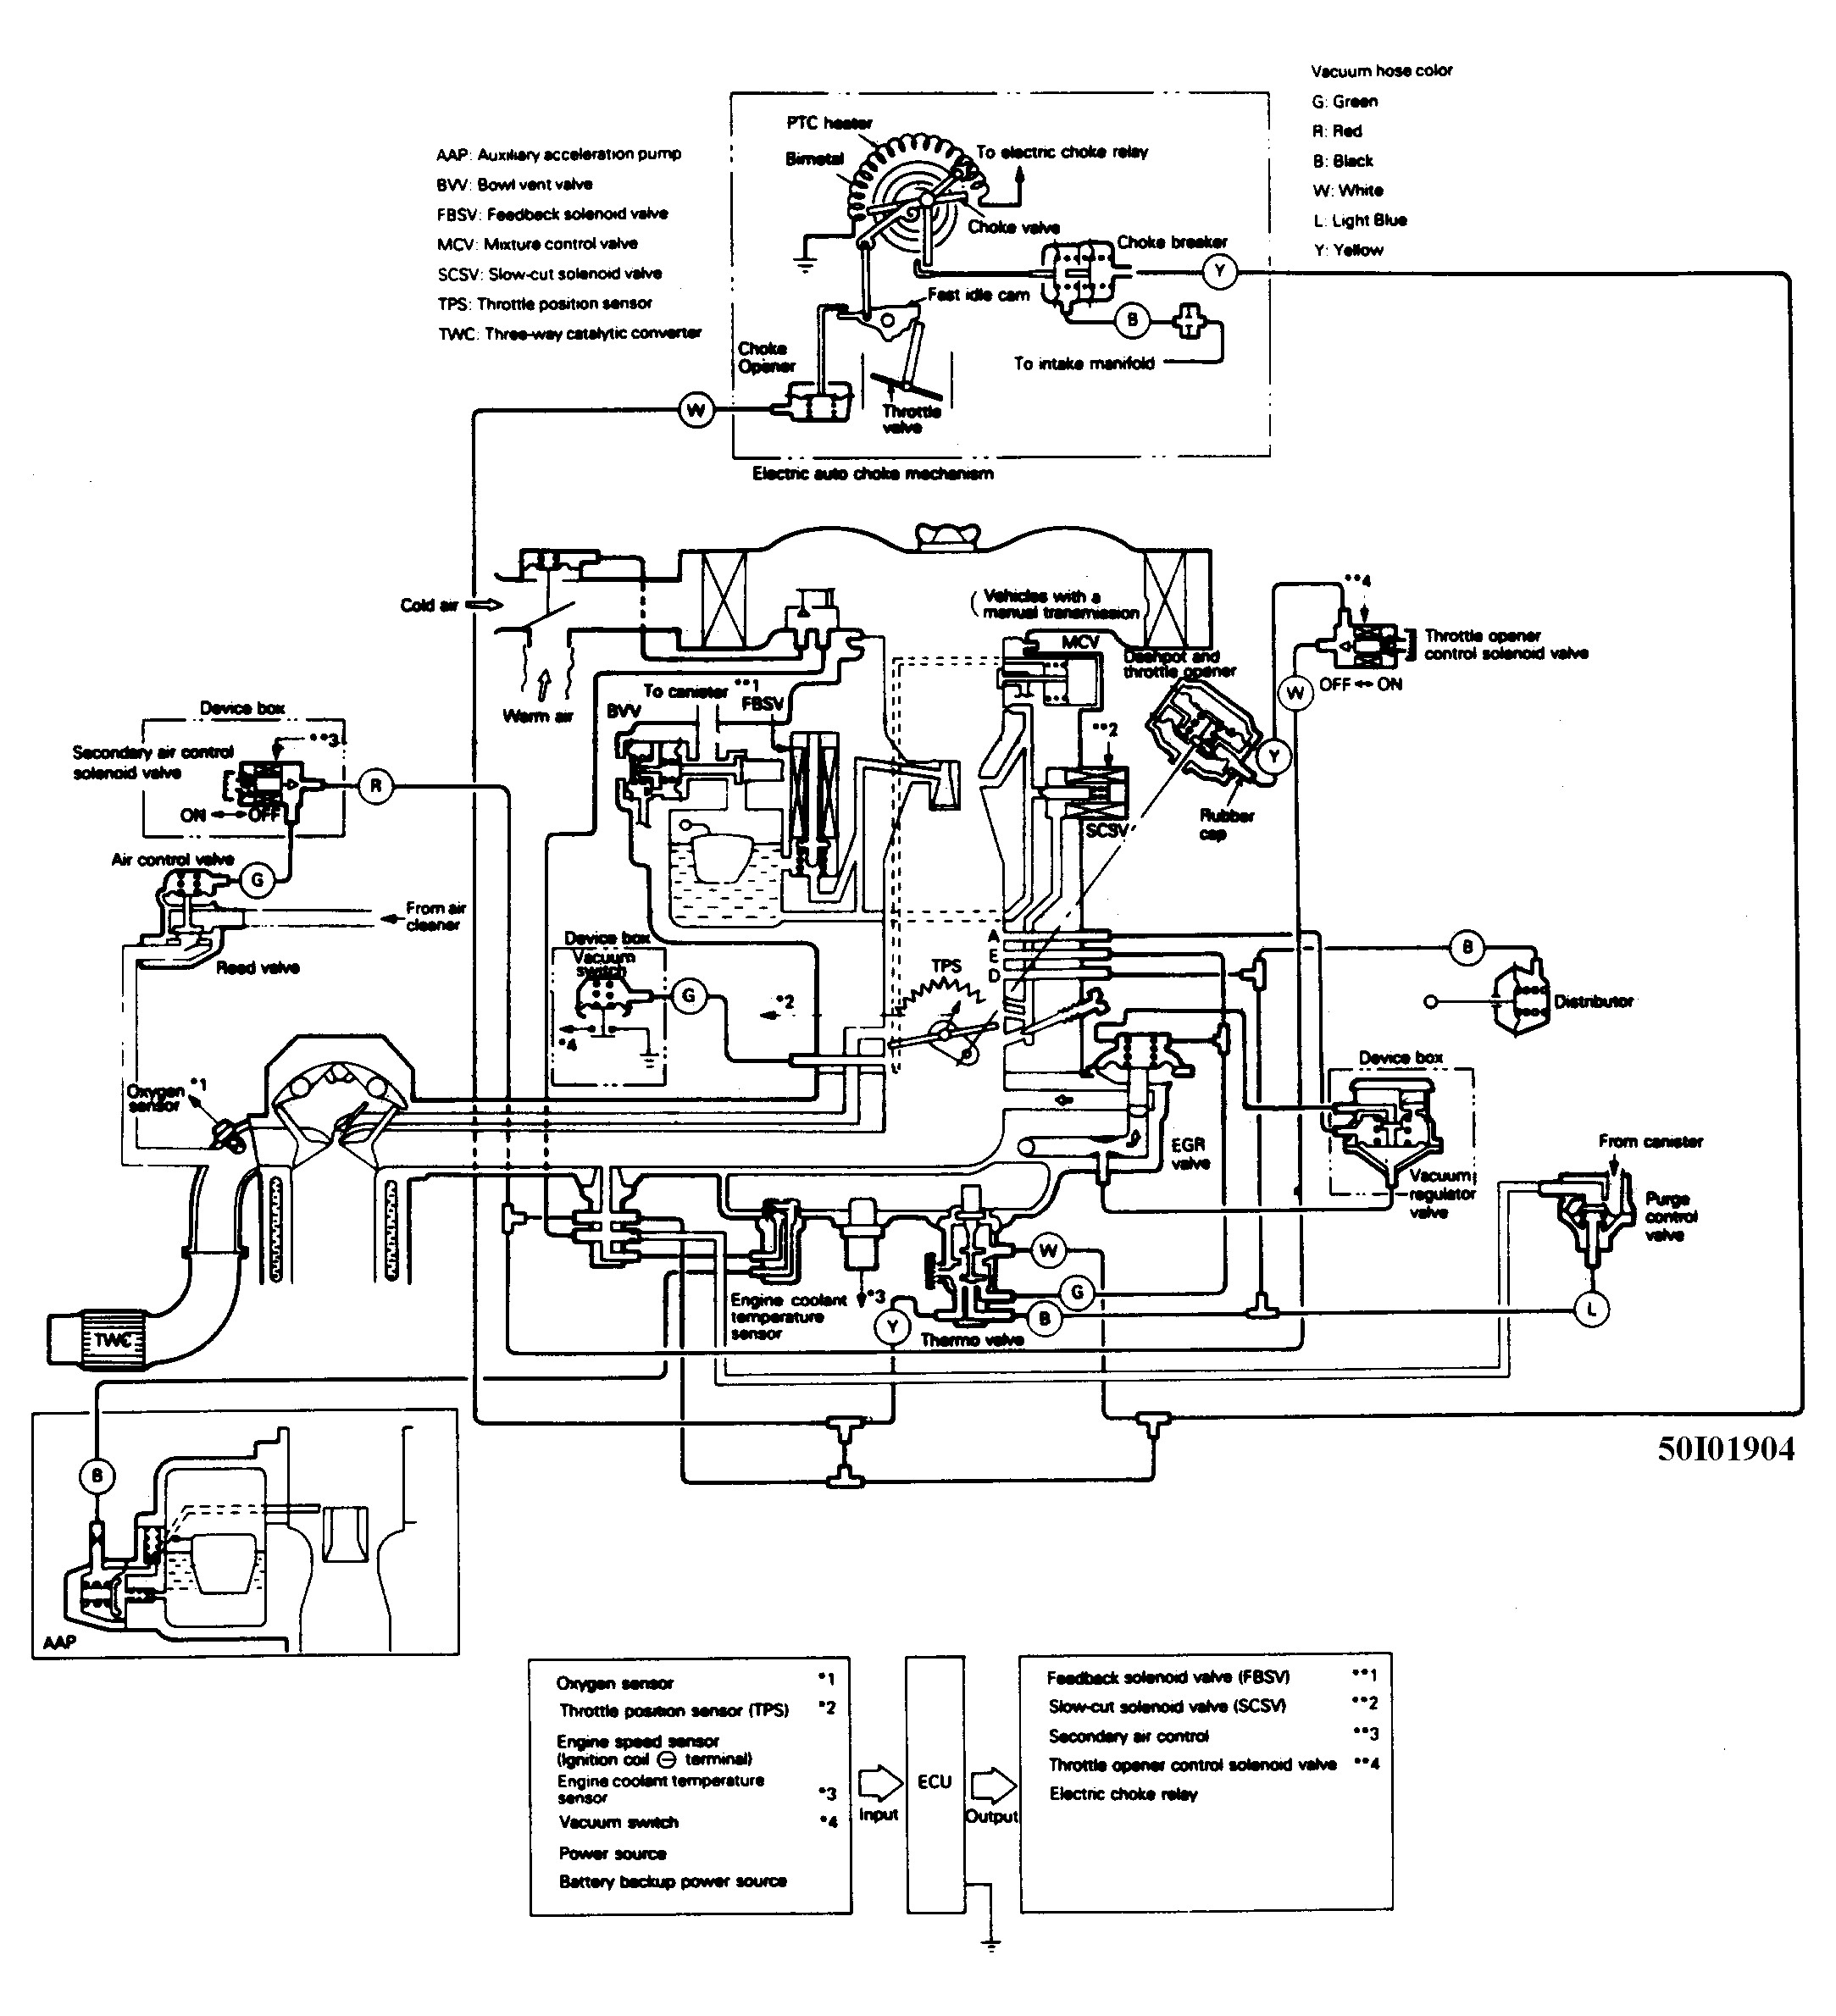 1987 Chevy Truck Vacuum Line Diagram 1998 Dodge Dakota Wiring Diagram Copy Need the Vacuum Hose Diagram Of 1987 Chevy Truck Vacuum Line Diagram